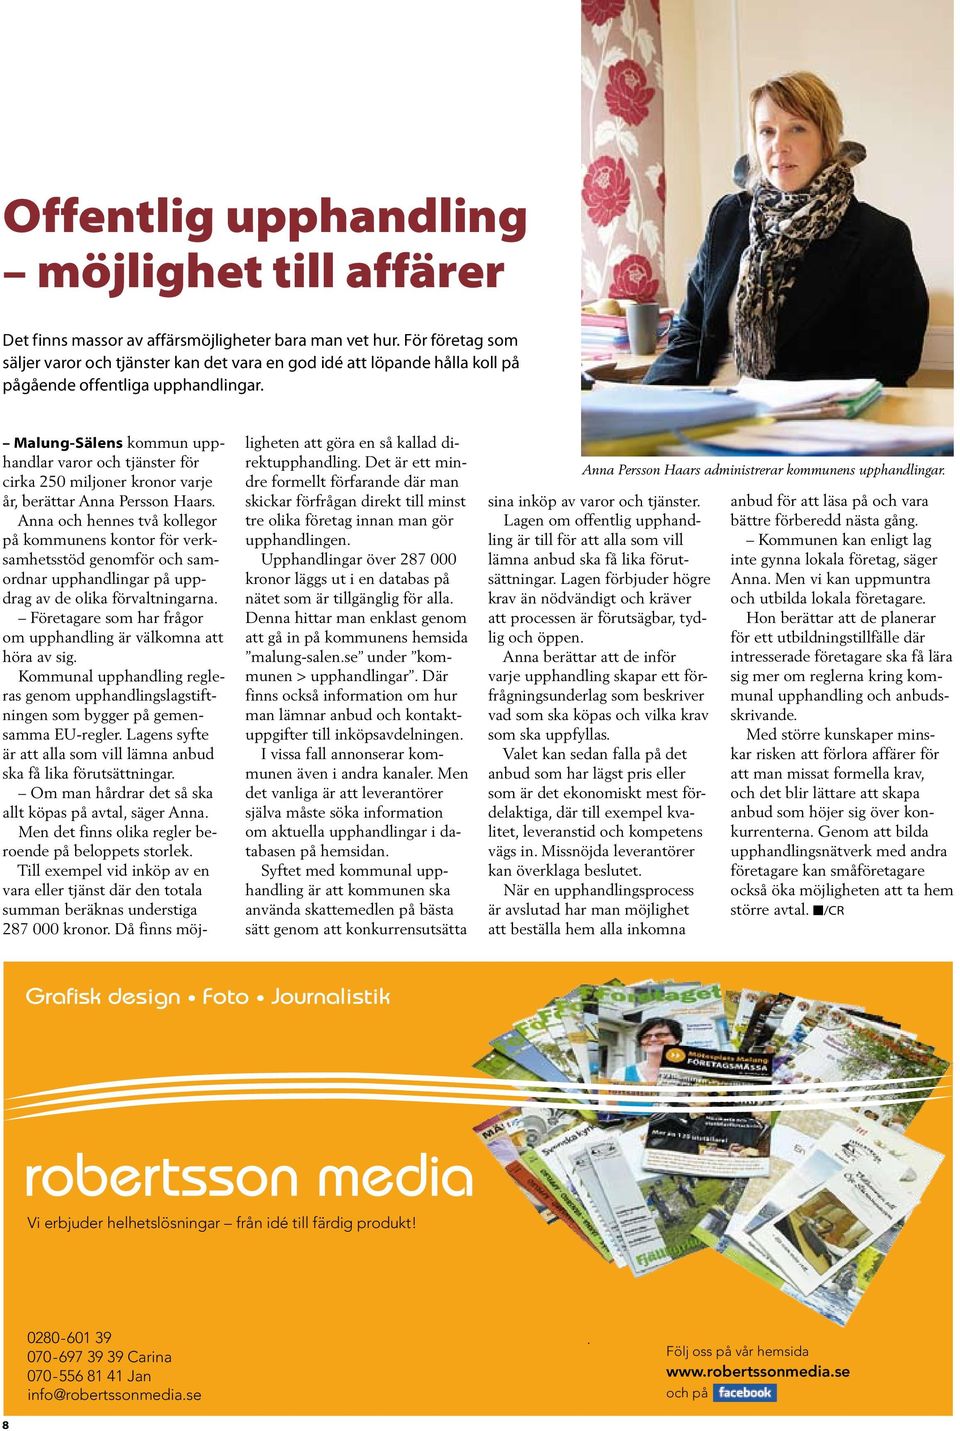 Malung-Sälens kommun upphandlar varor och tjänster för cirka 250 miljoner kronor varje år, berättar Anna Persson Haars.